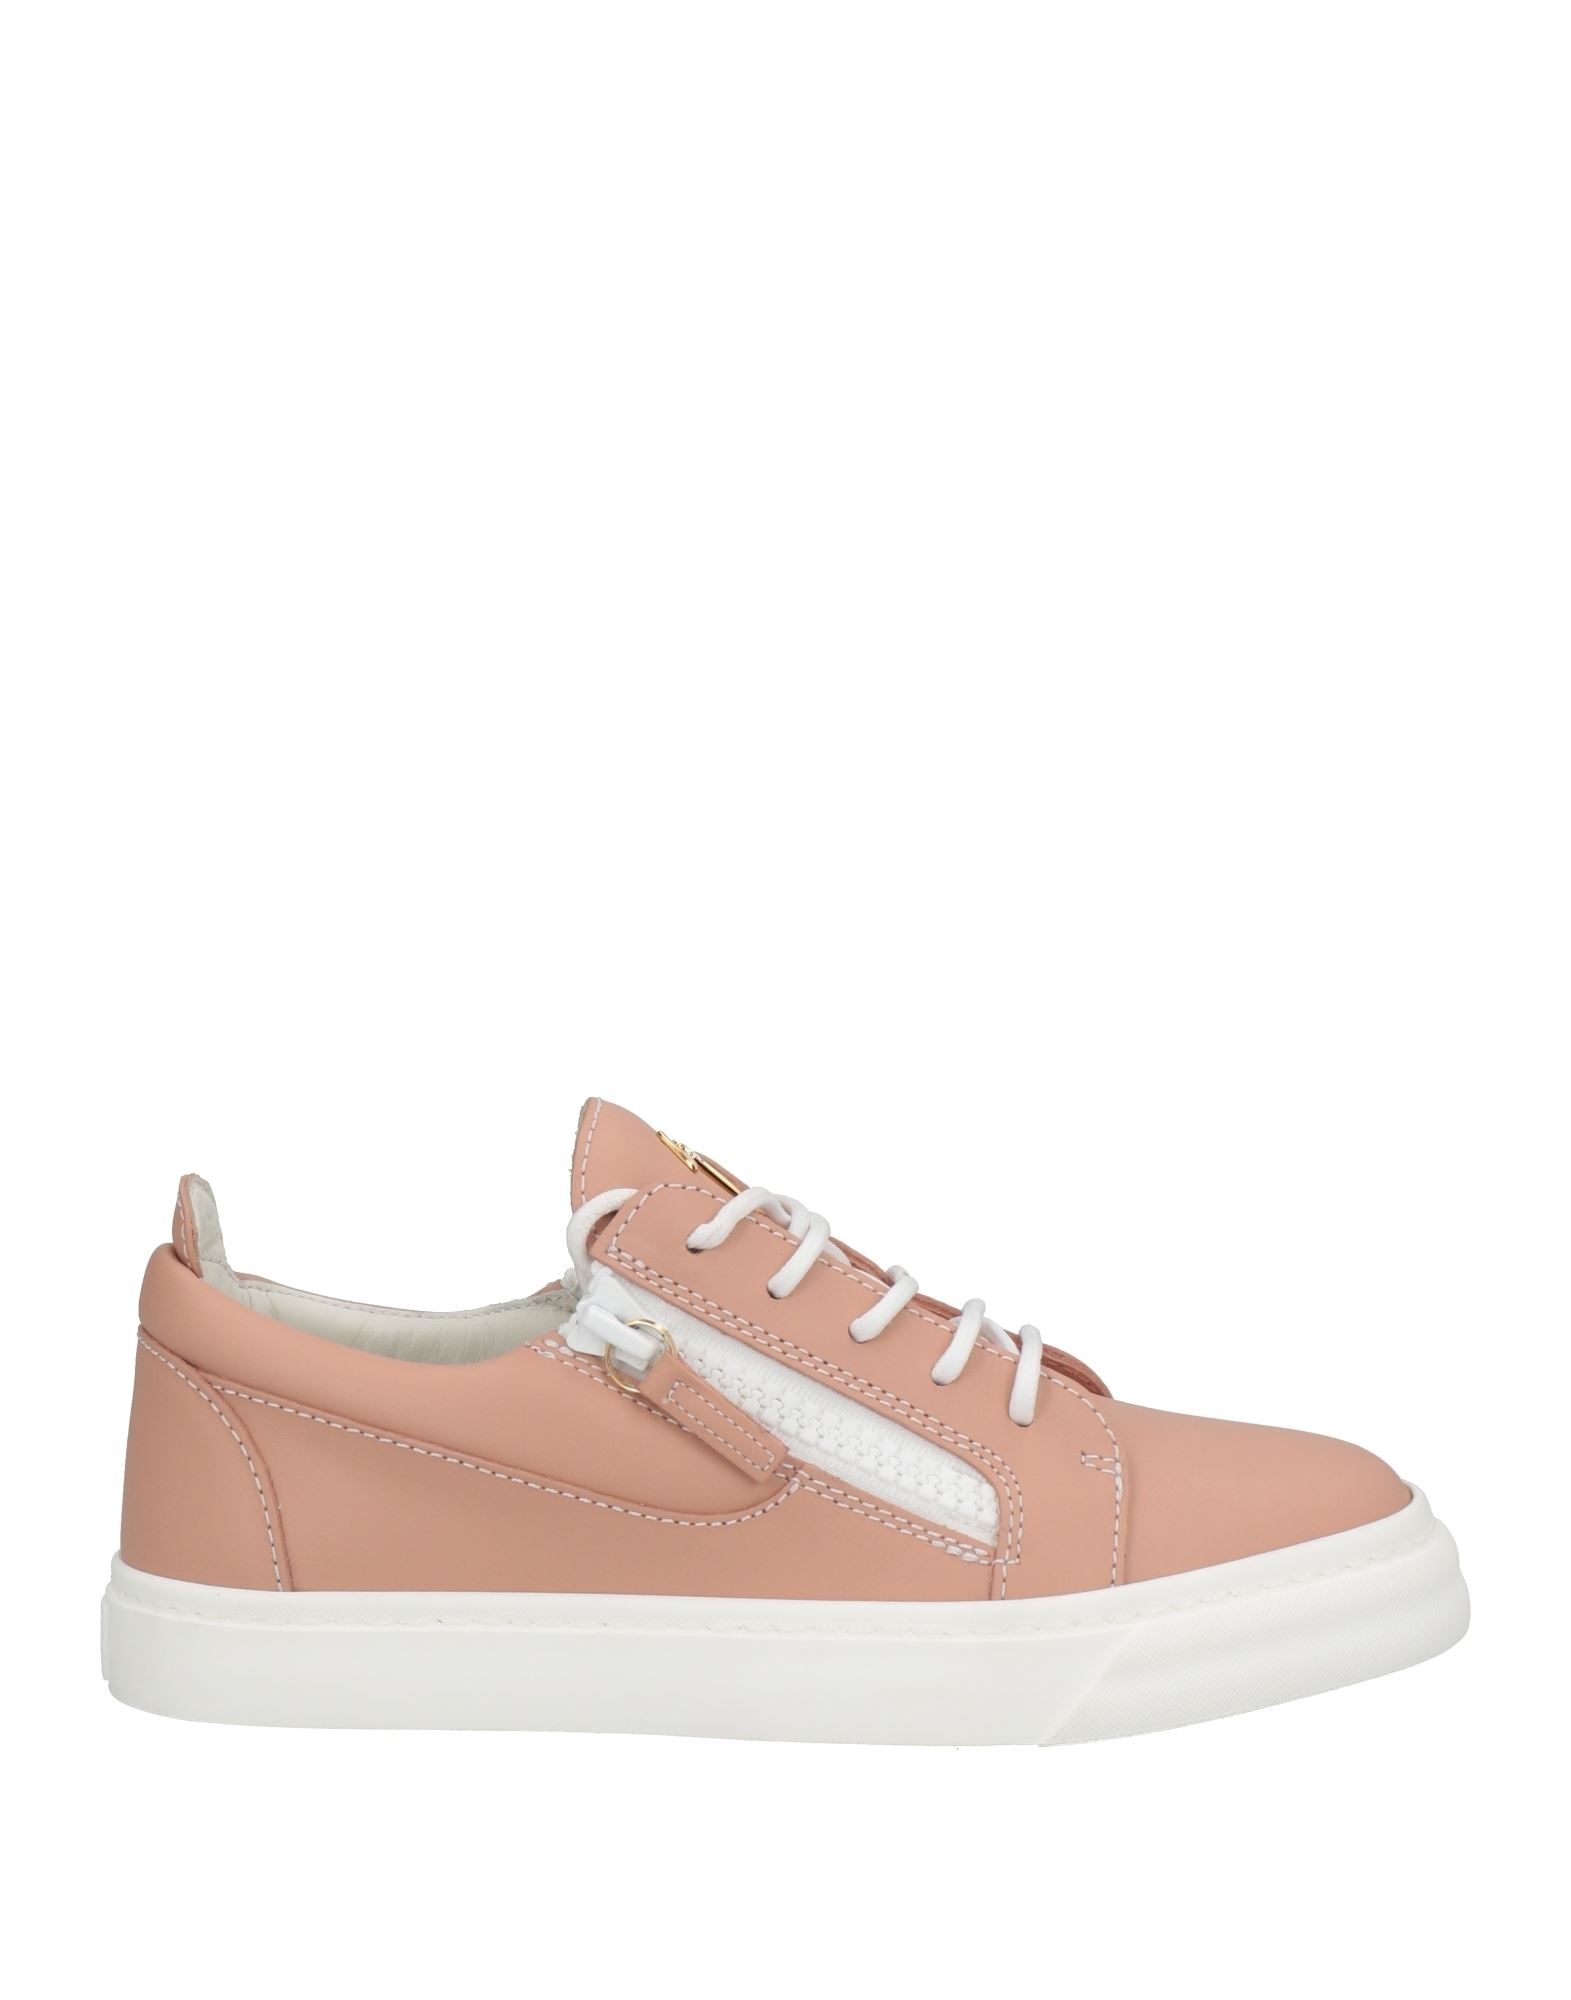 Giuseppe Zanotti Woman Sneakers Pastel Pink Size 11 Soft Leather